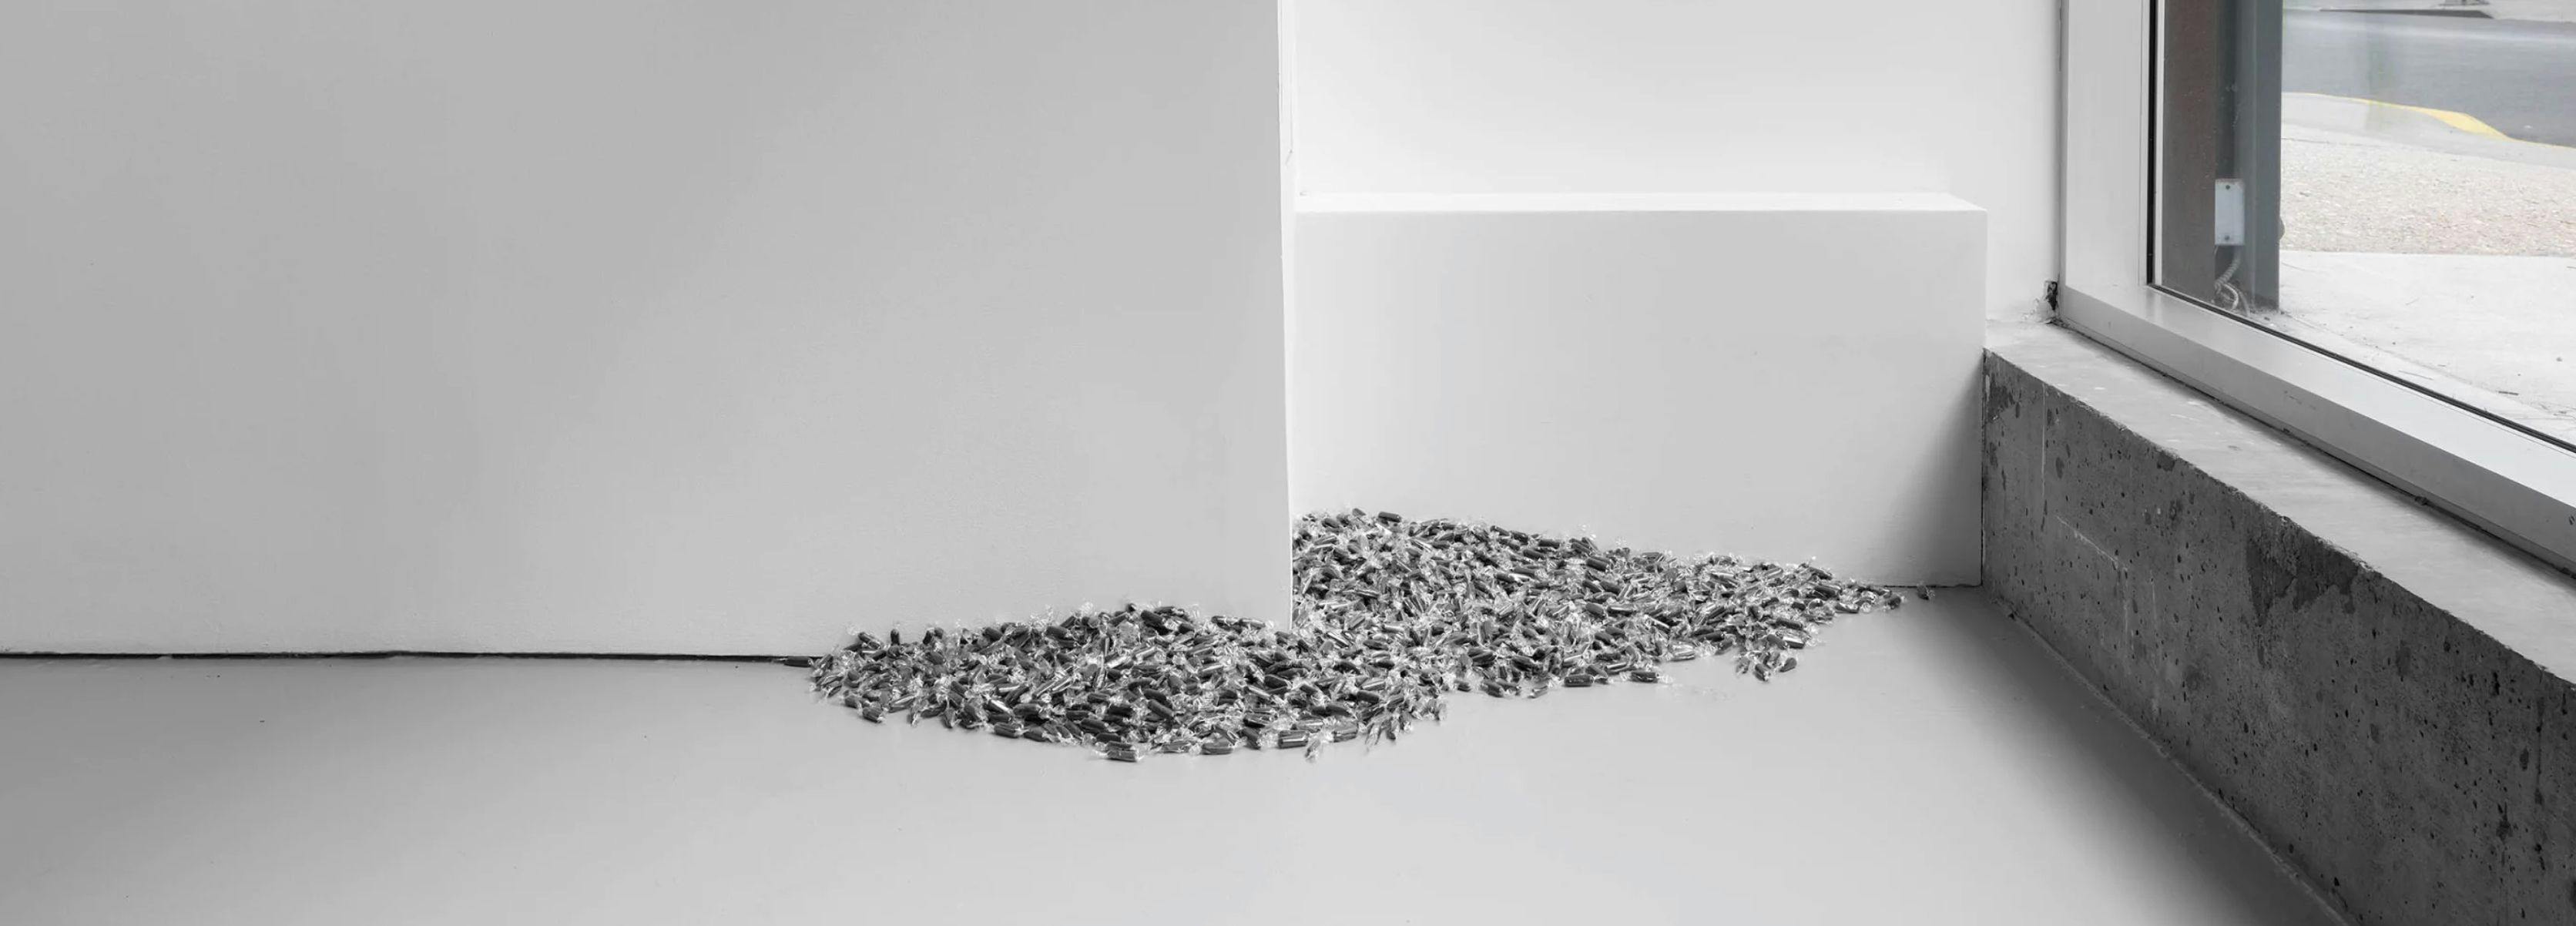 An installation view of Felix Gonzalez-Torres at David Zwirner